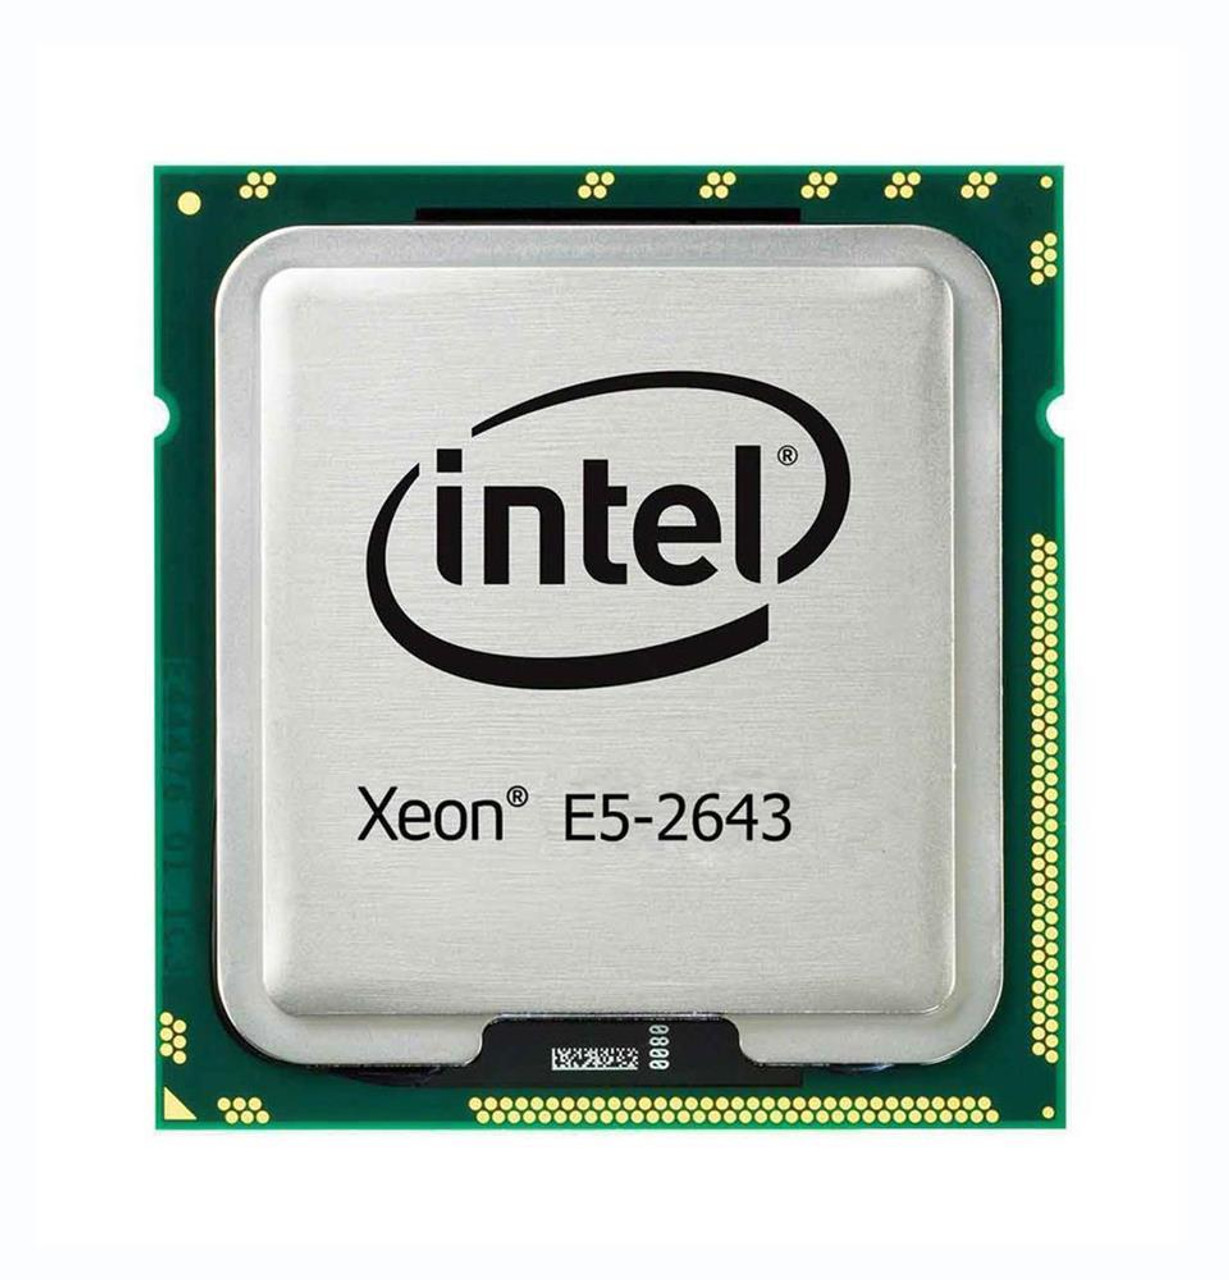 Cisco 3.30GHz 8.00GT/s QPI 10MB L3 Cache Intel Xeon E5-2643 Quad-Core Processor Upgrade